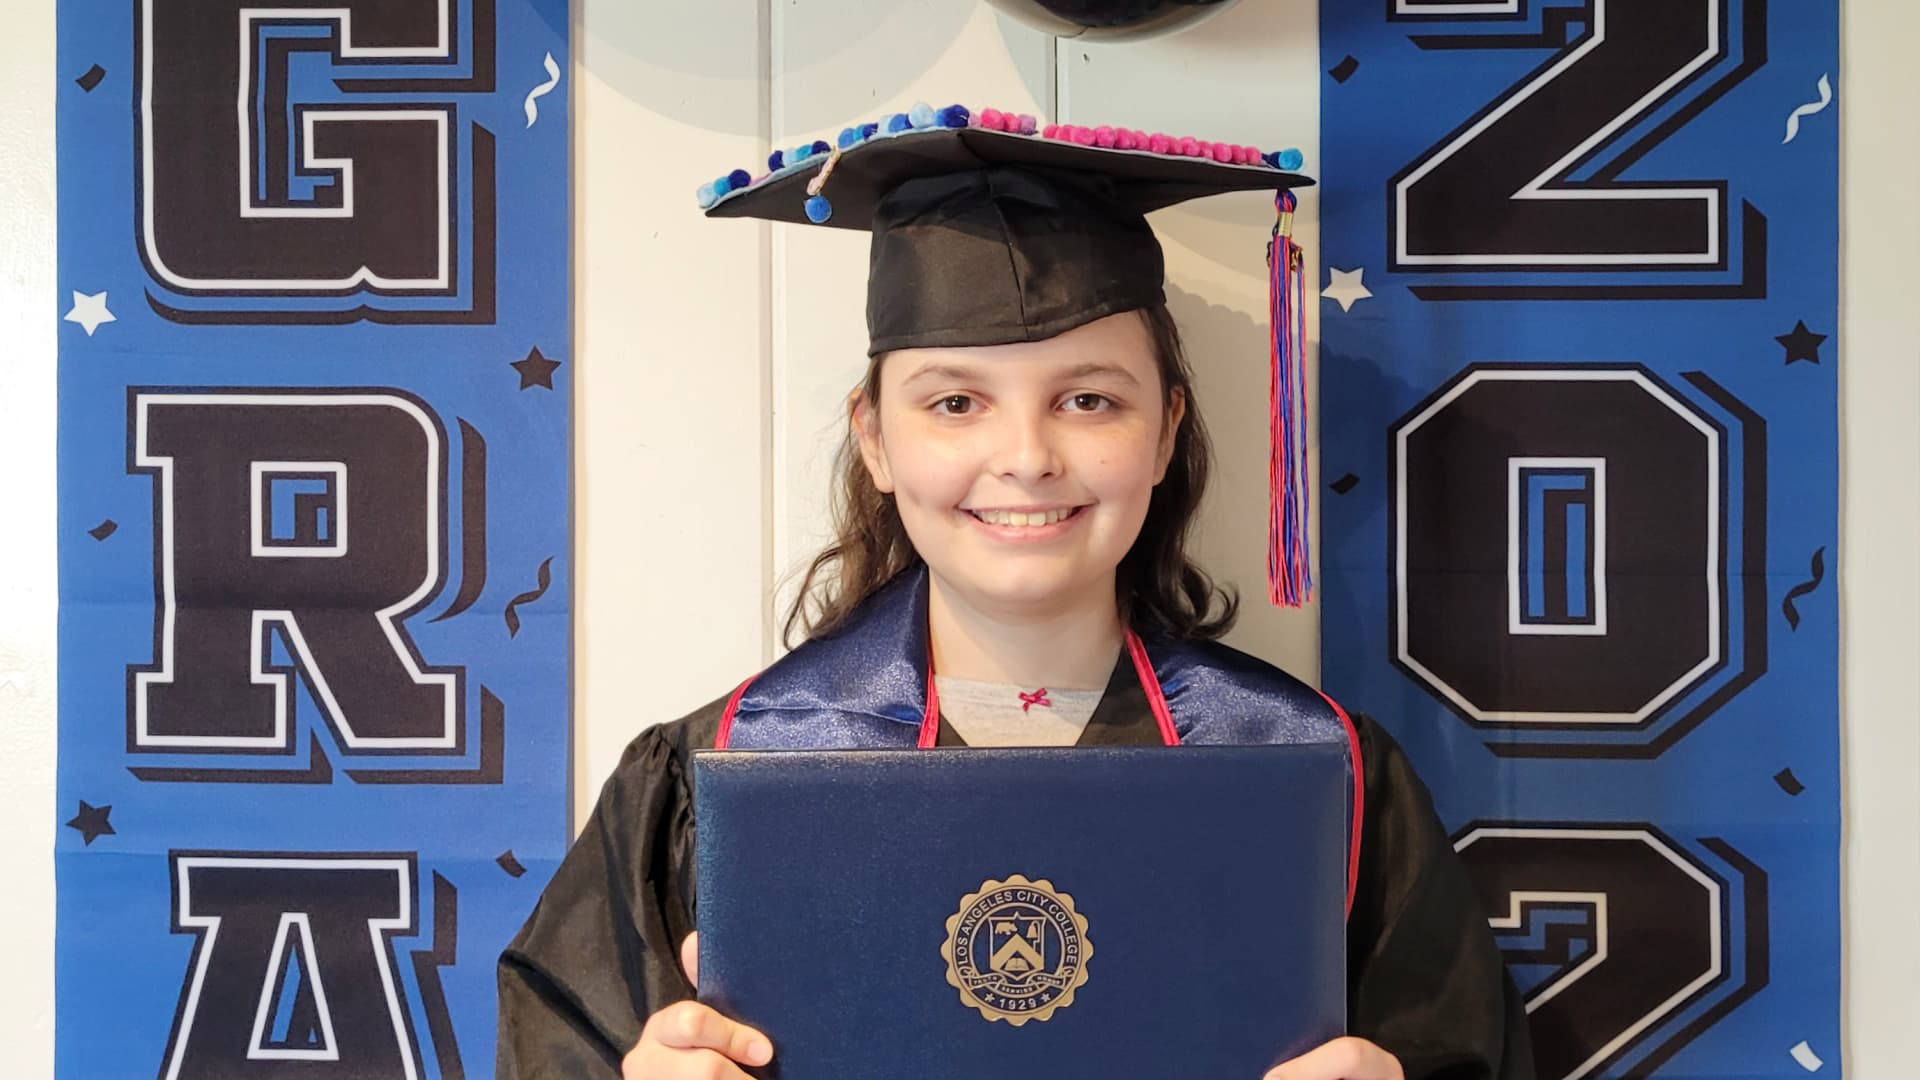 Fiona nhận bằng tốt nghiệp đại học ở tuổi 12.